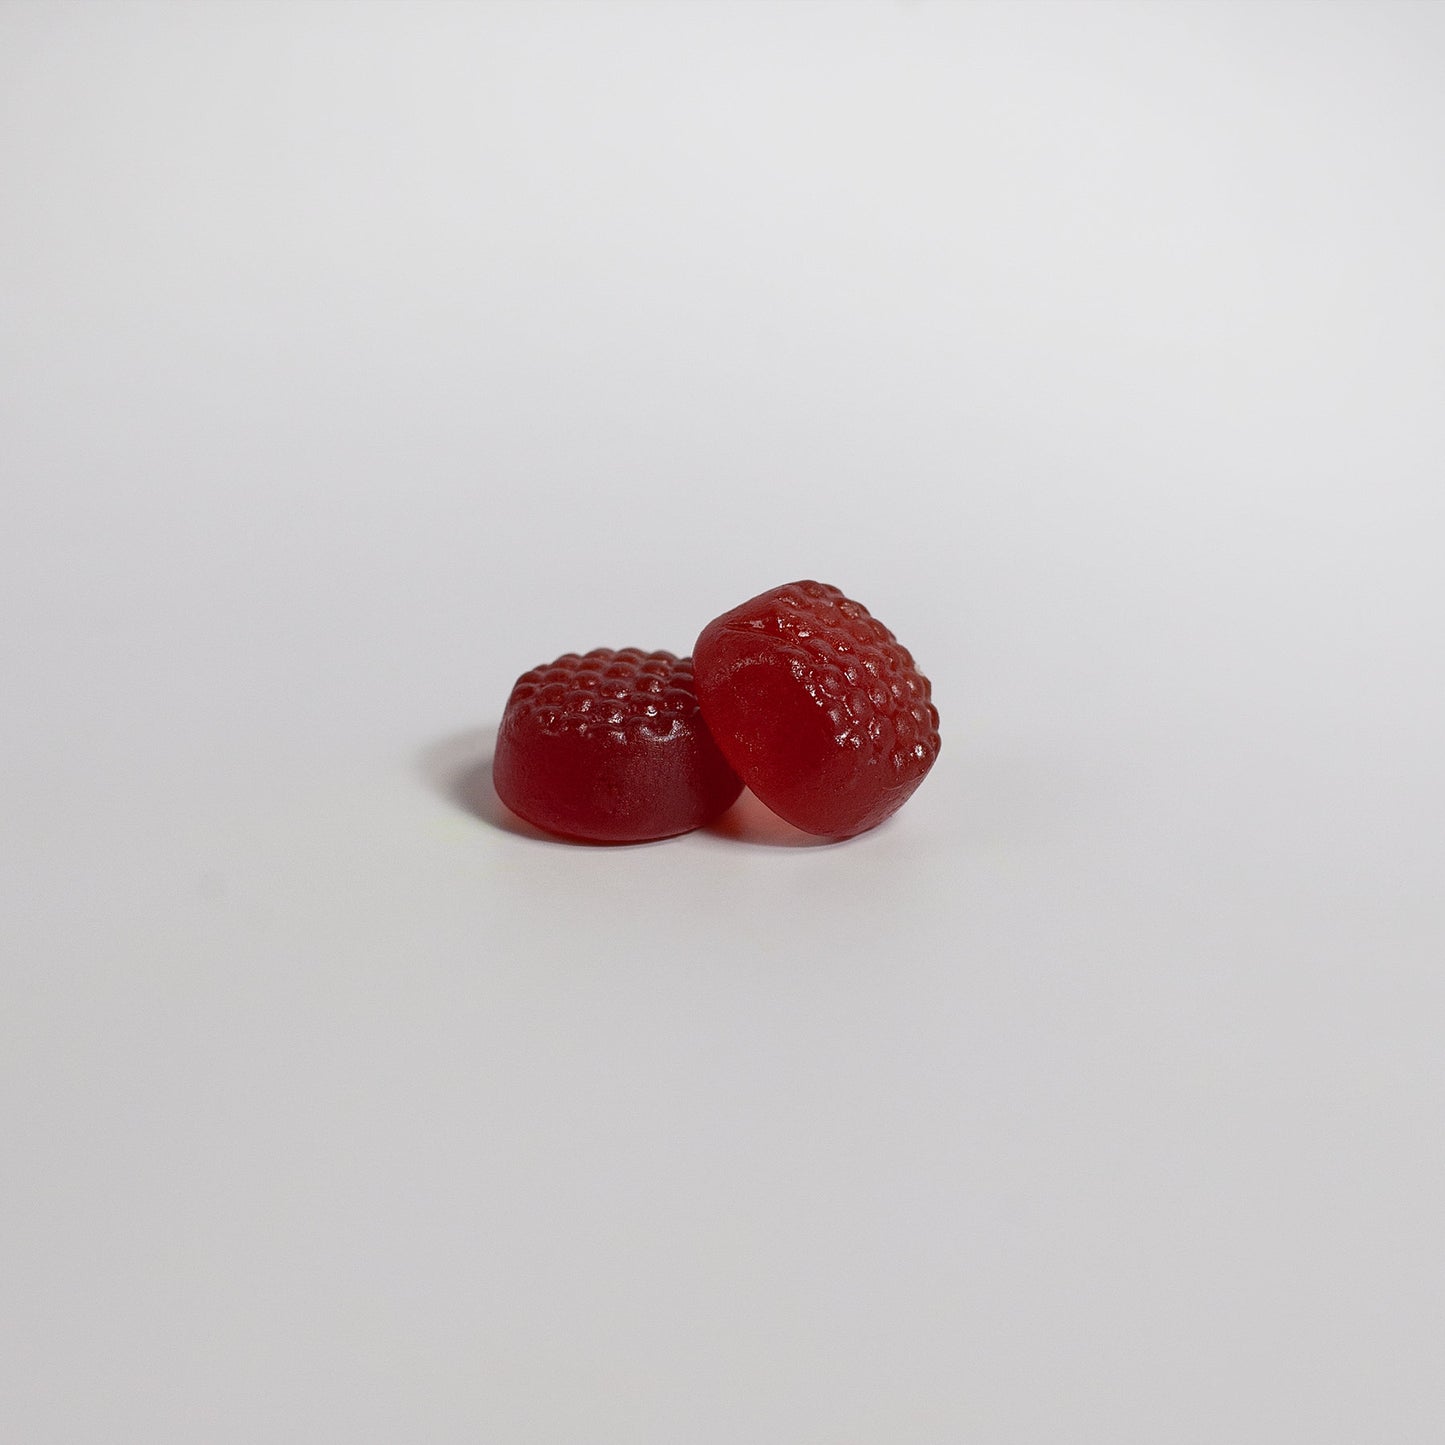 Astramor Elderberry Gummies with Vitamin C